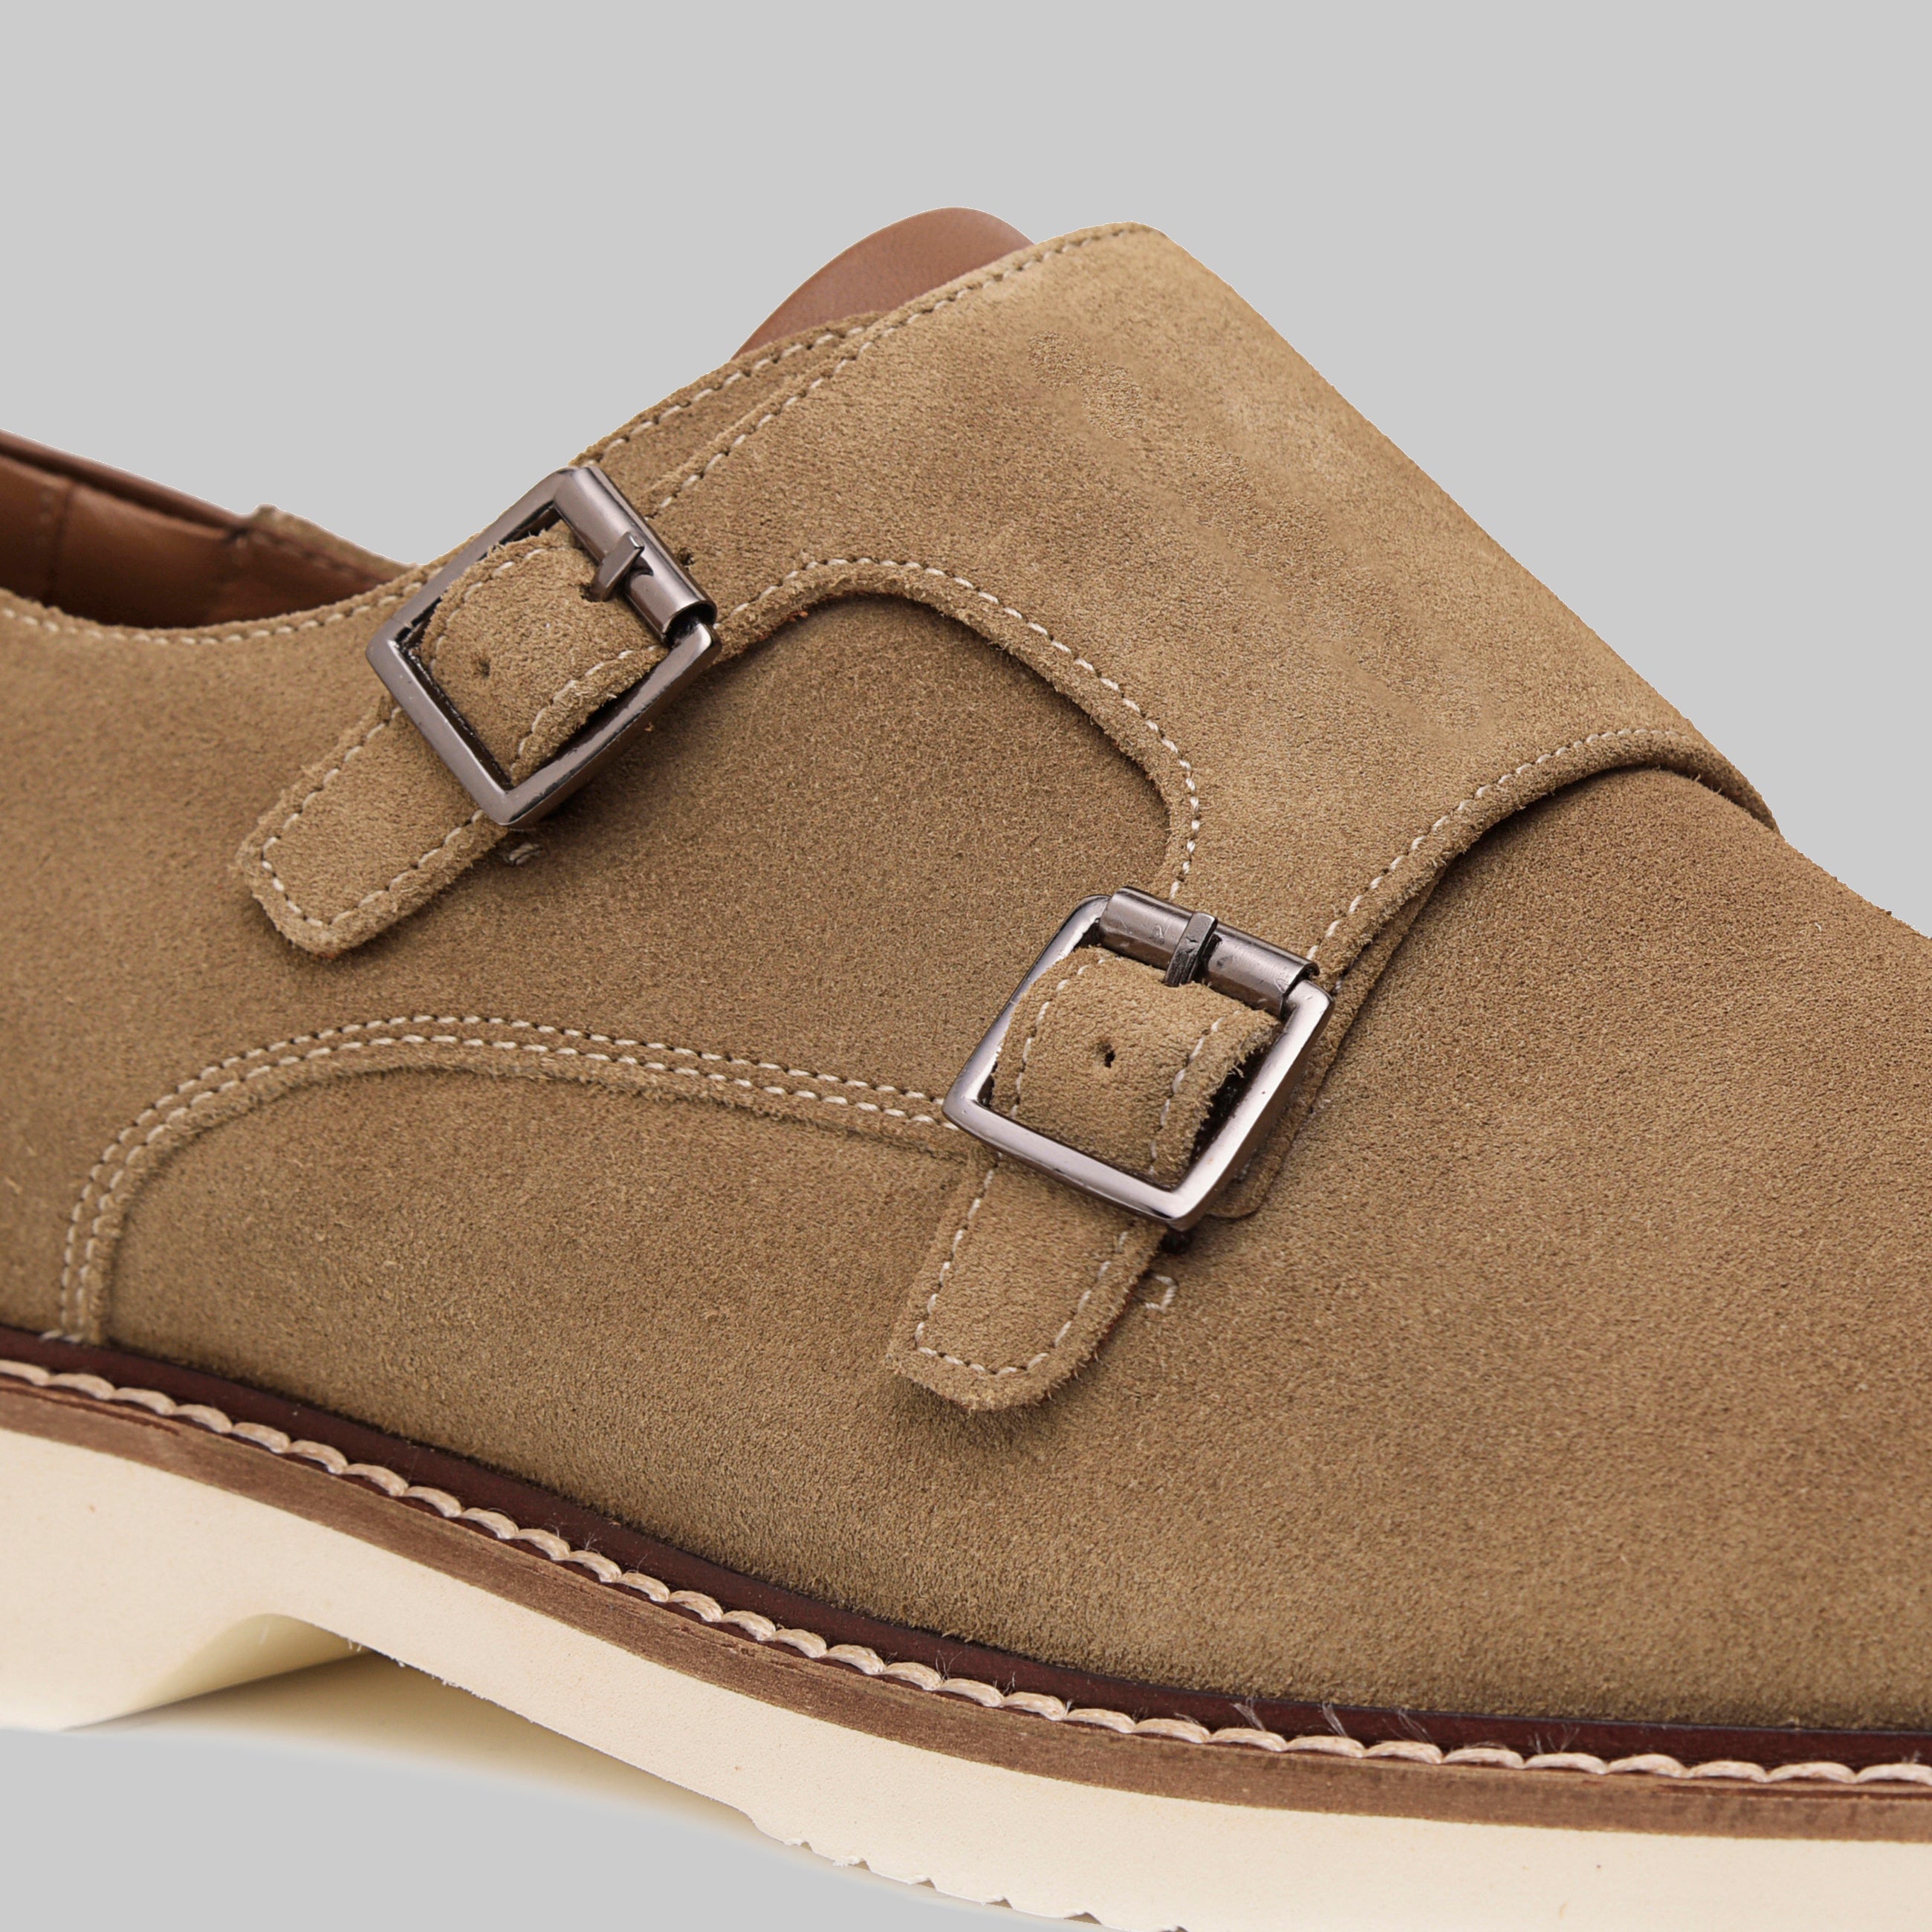 Neil Plain Toe Monk Strap Casual Shoes